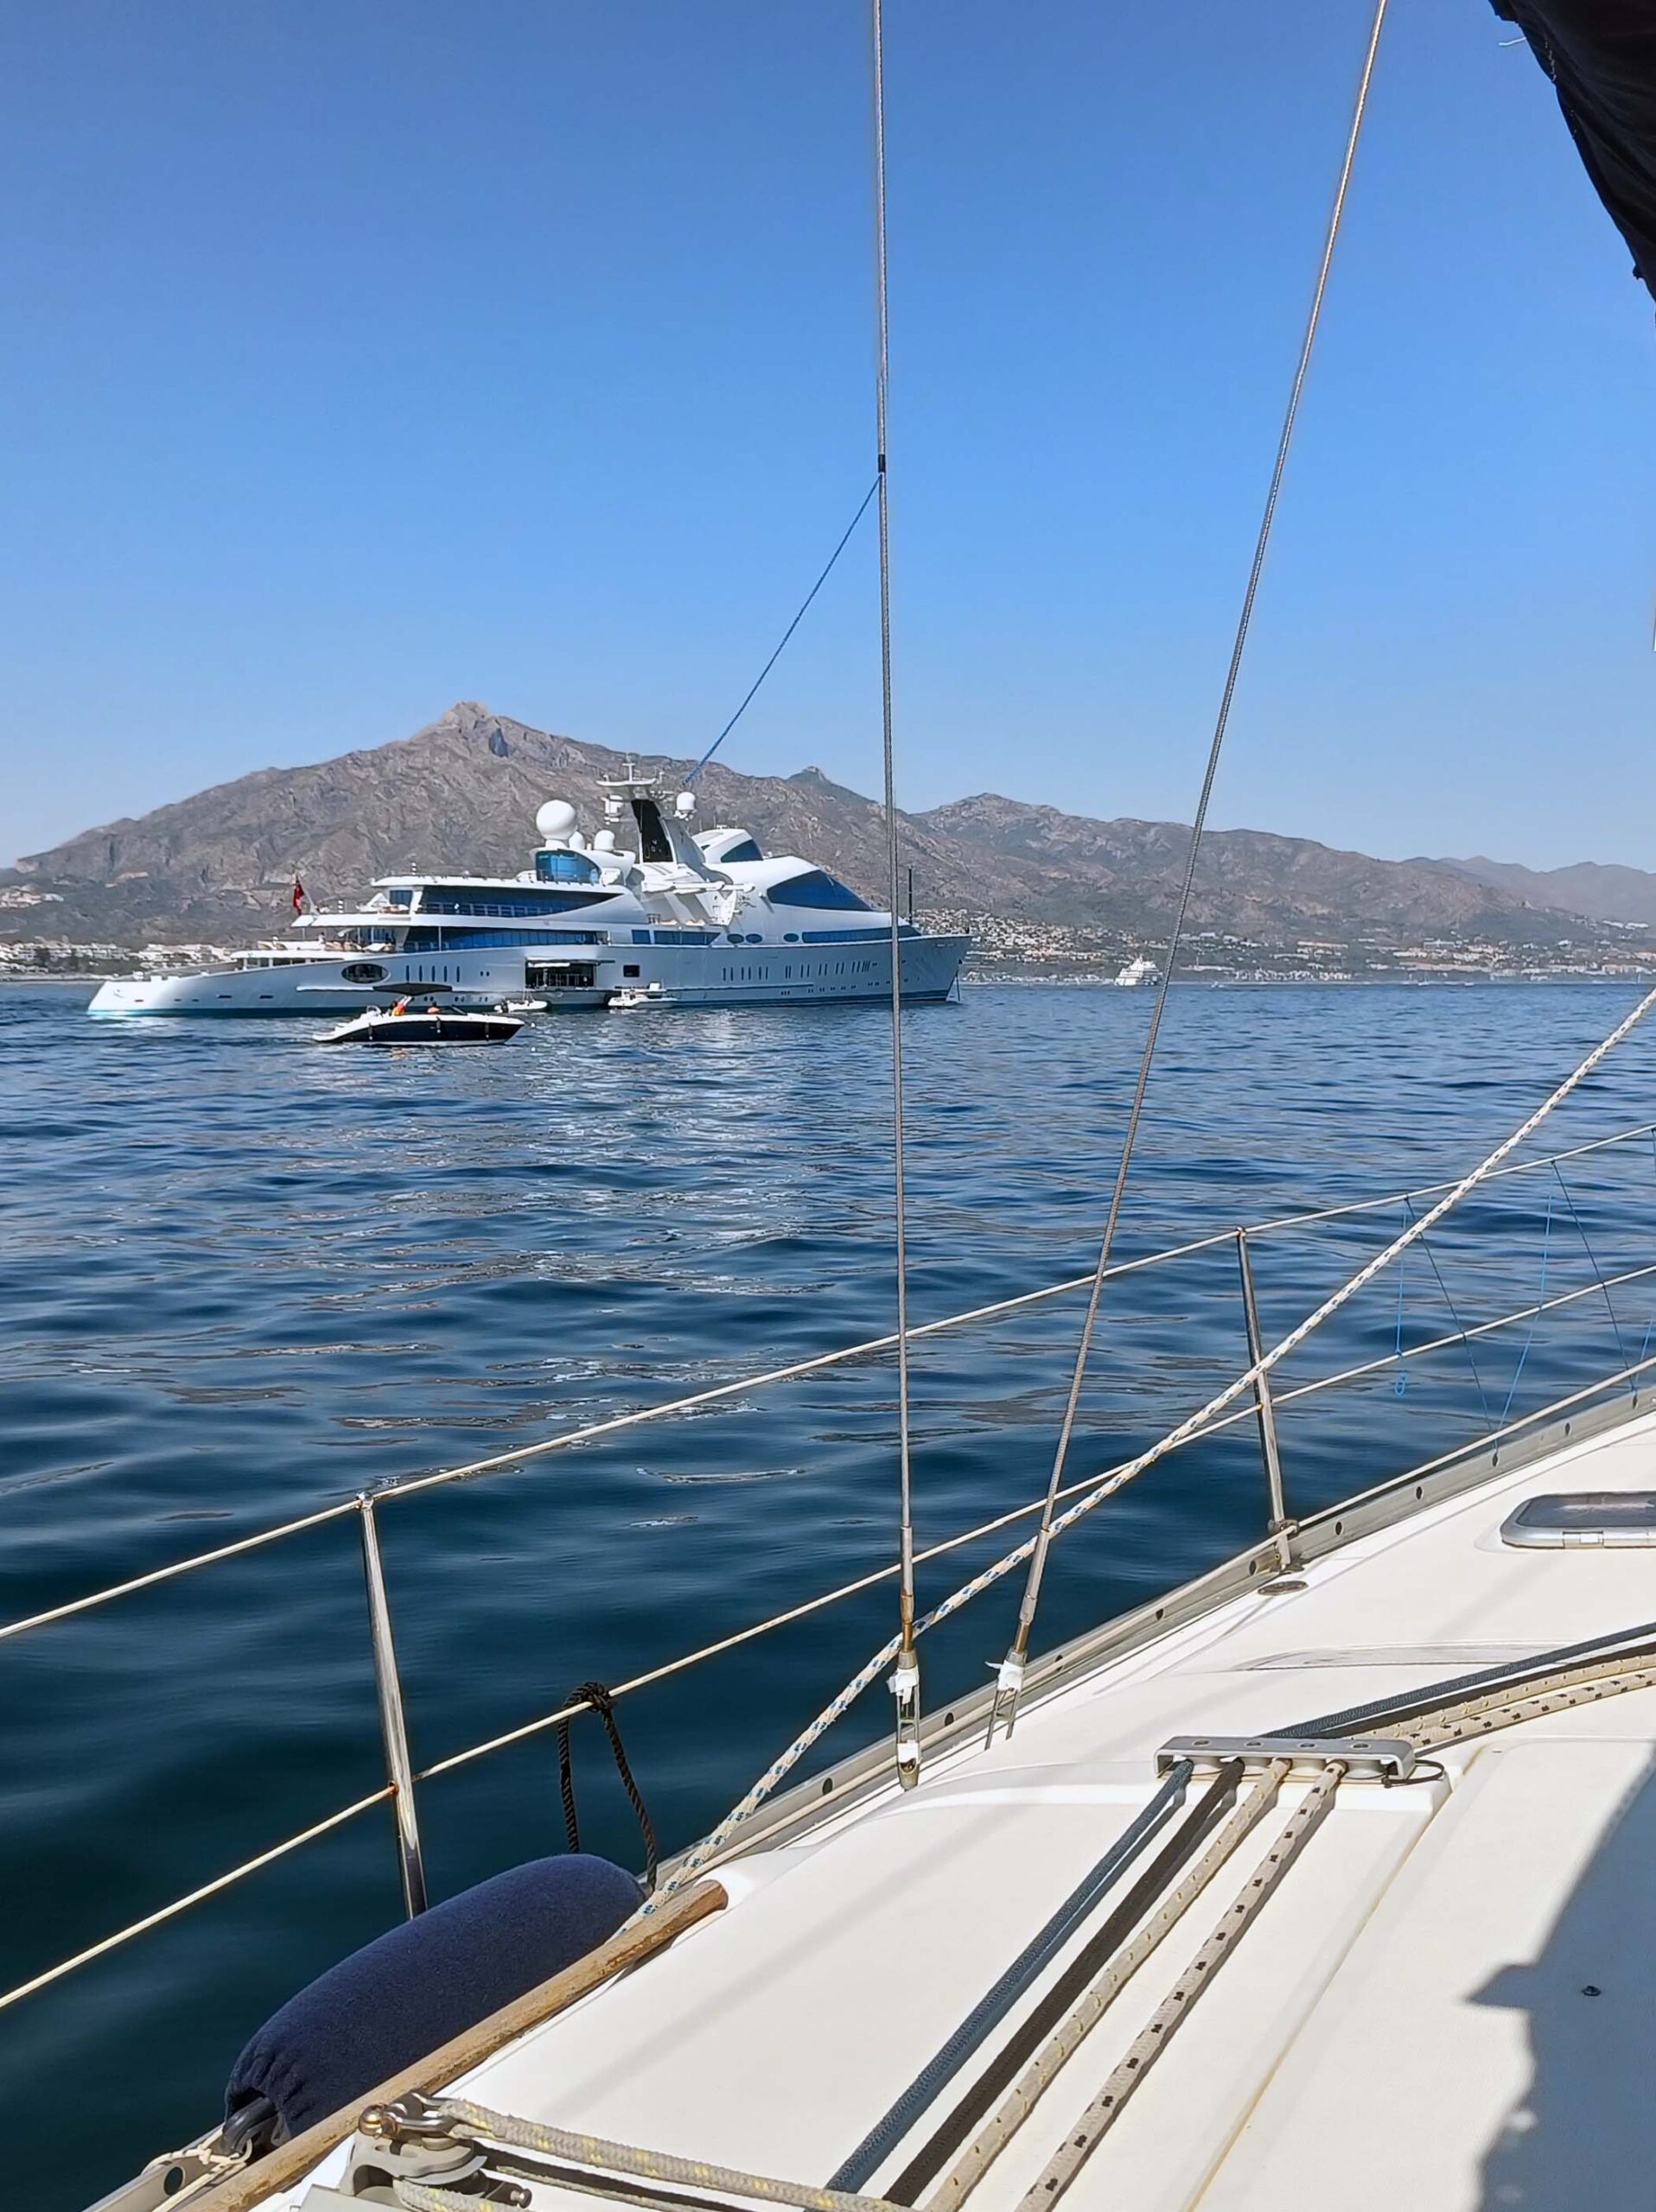 Paseo en barco Milla de Oro Marbella megayates Puerto Banus